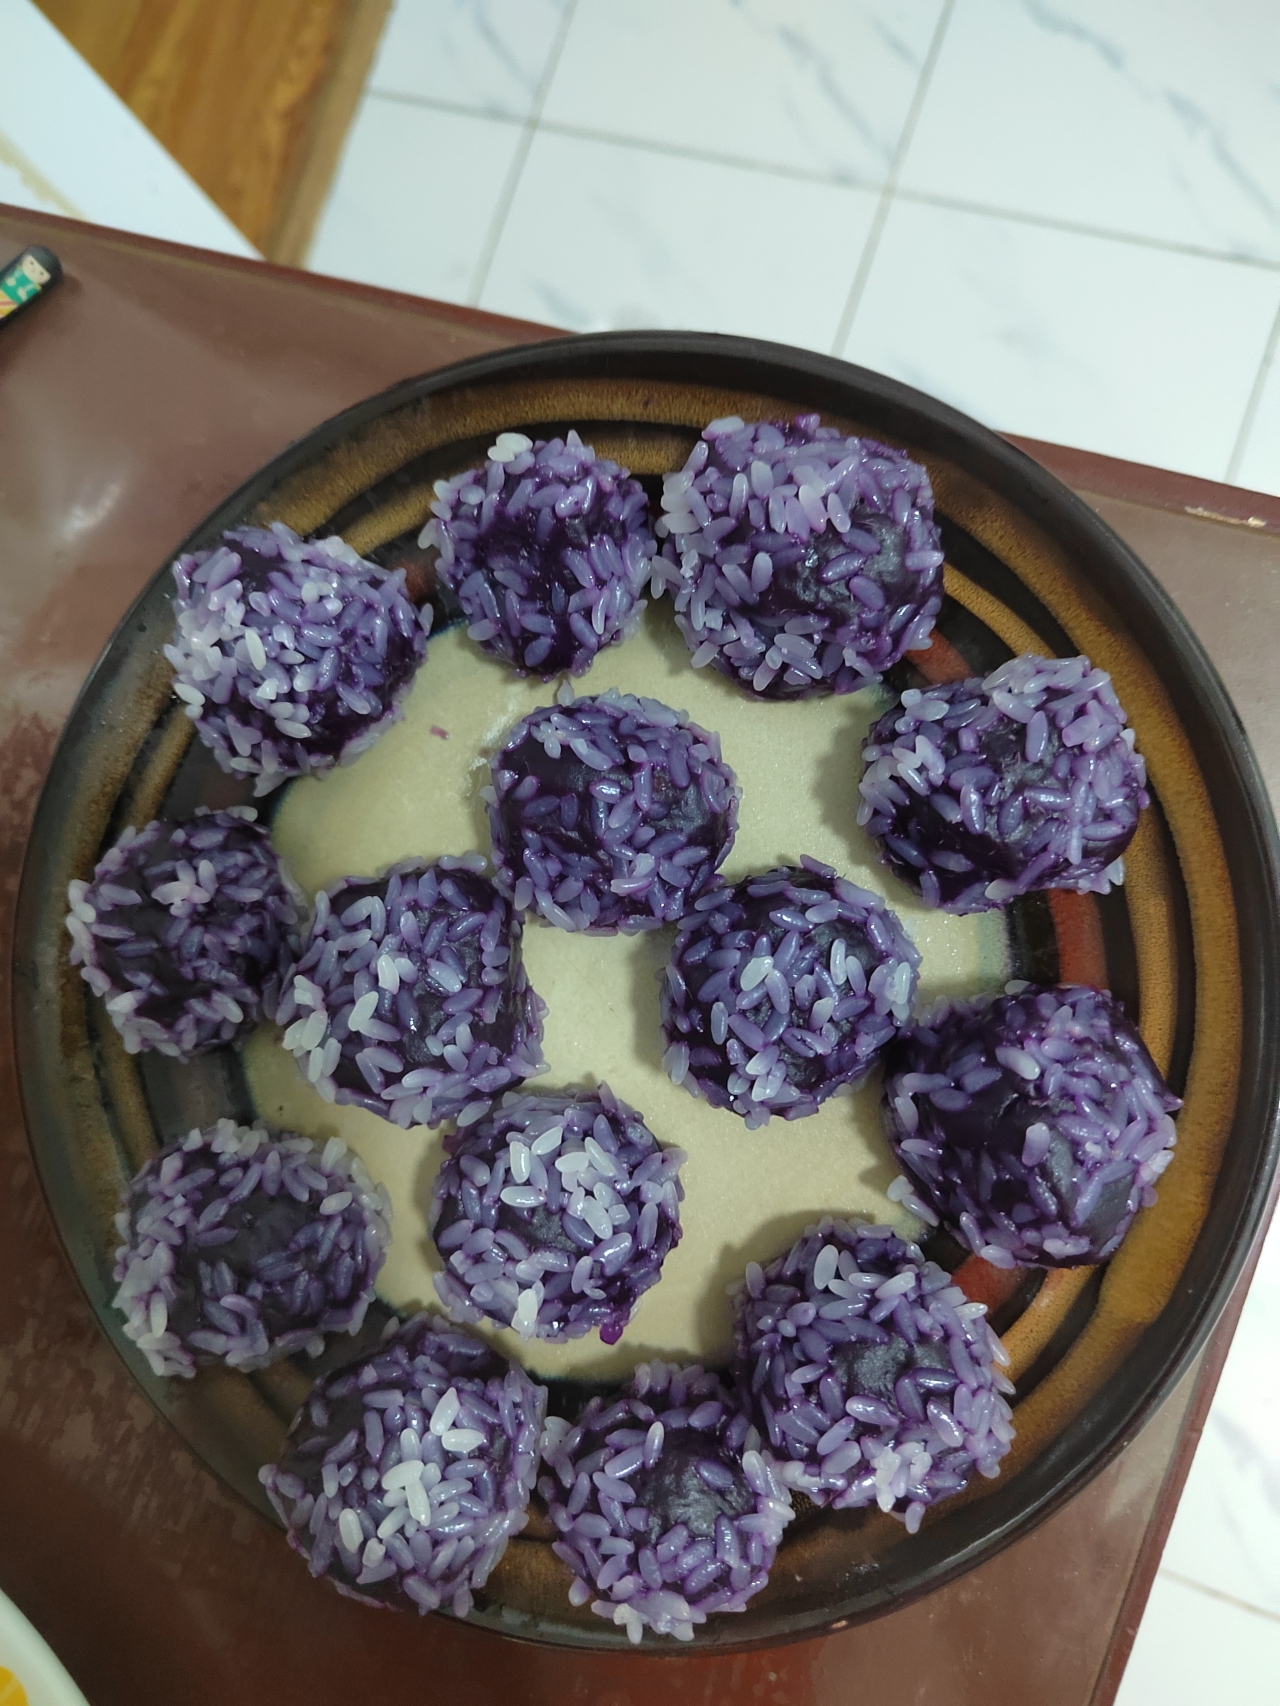 年夜饭必备系列丨高颜值自制紫薯糯米丸子